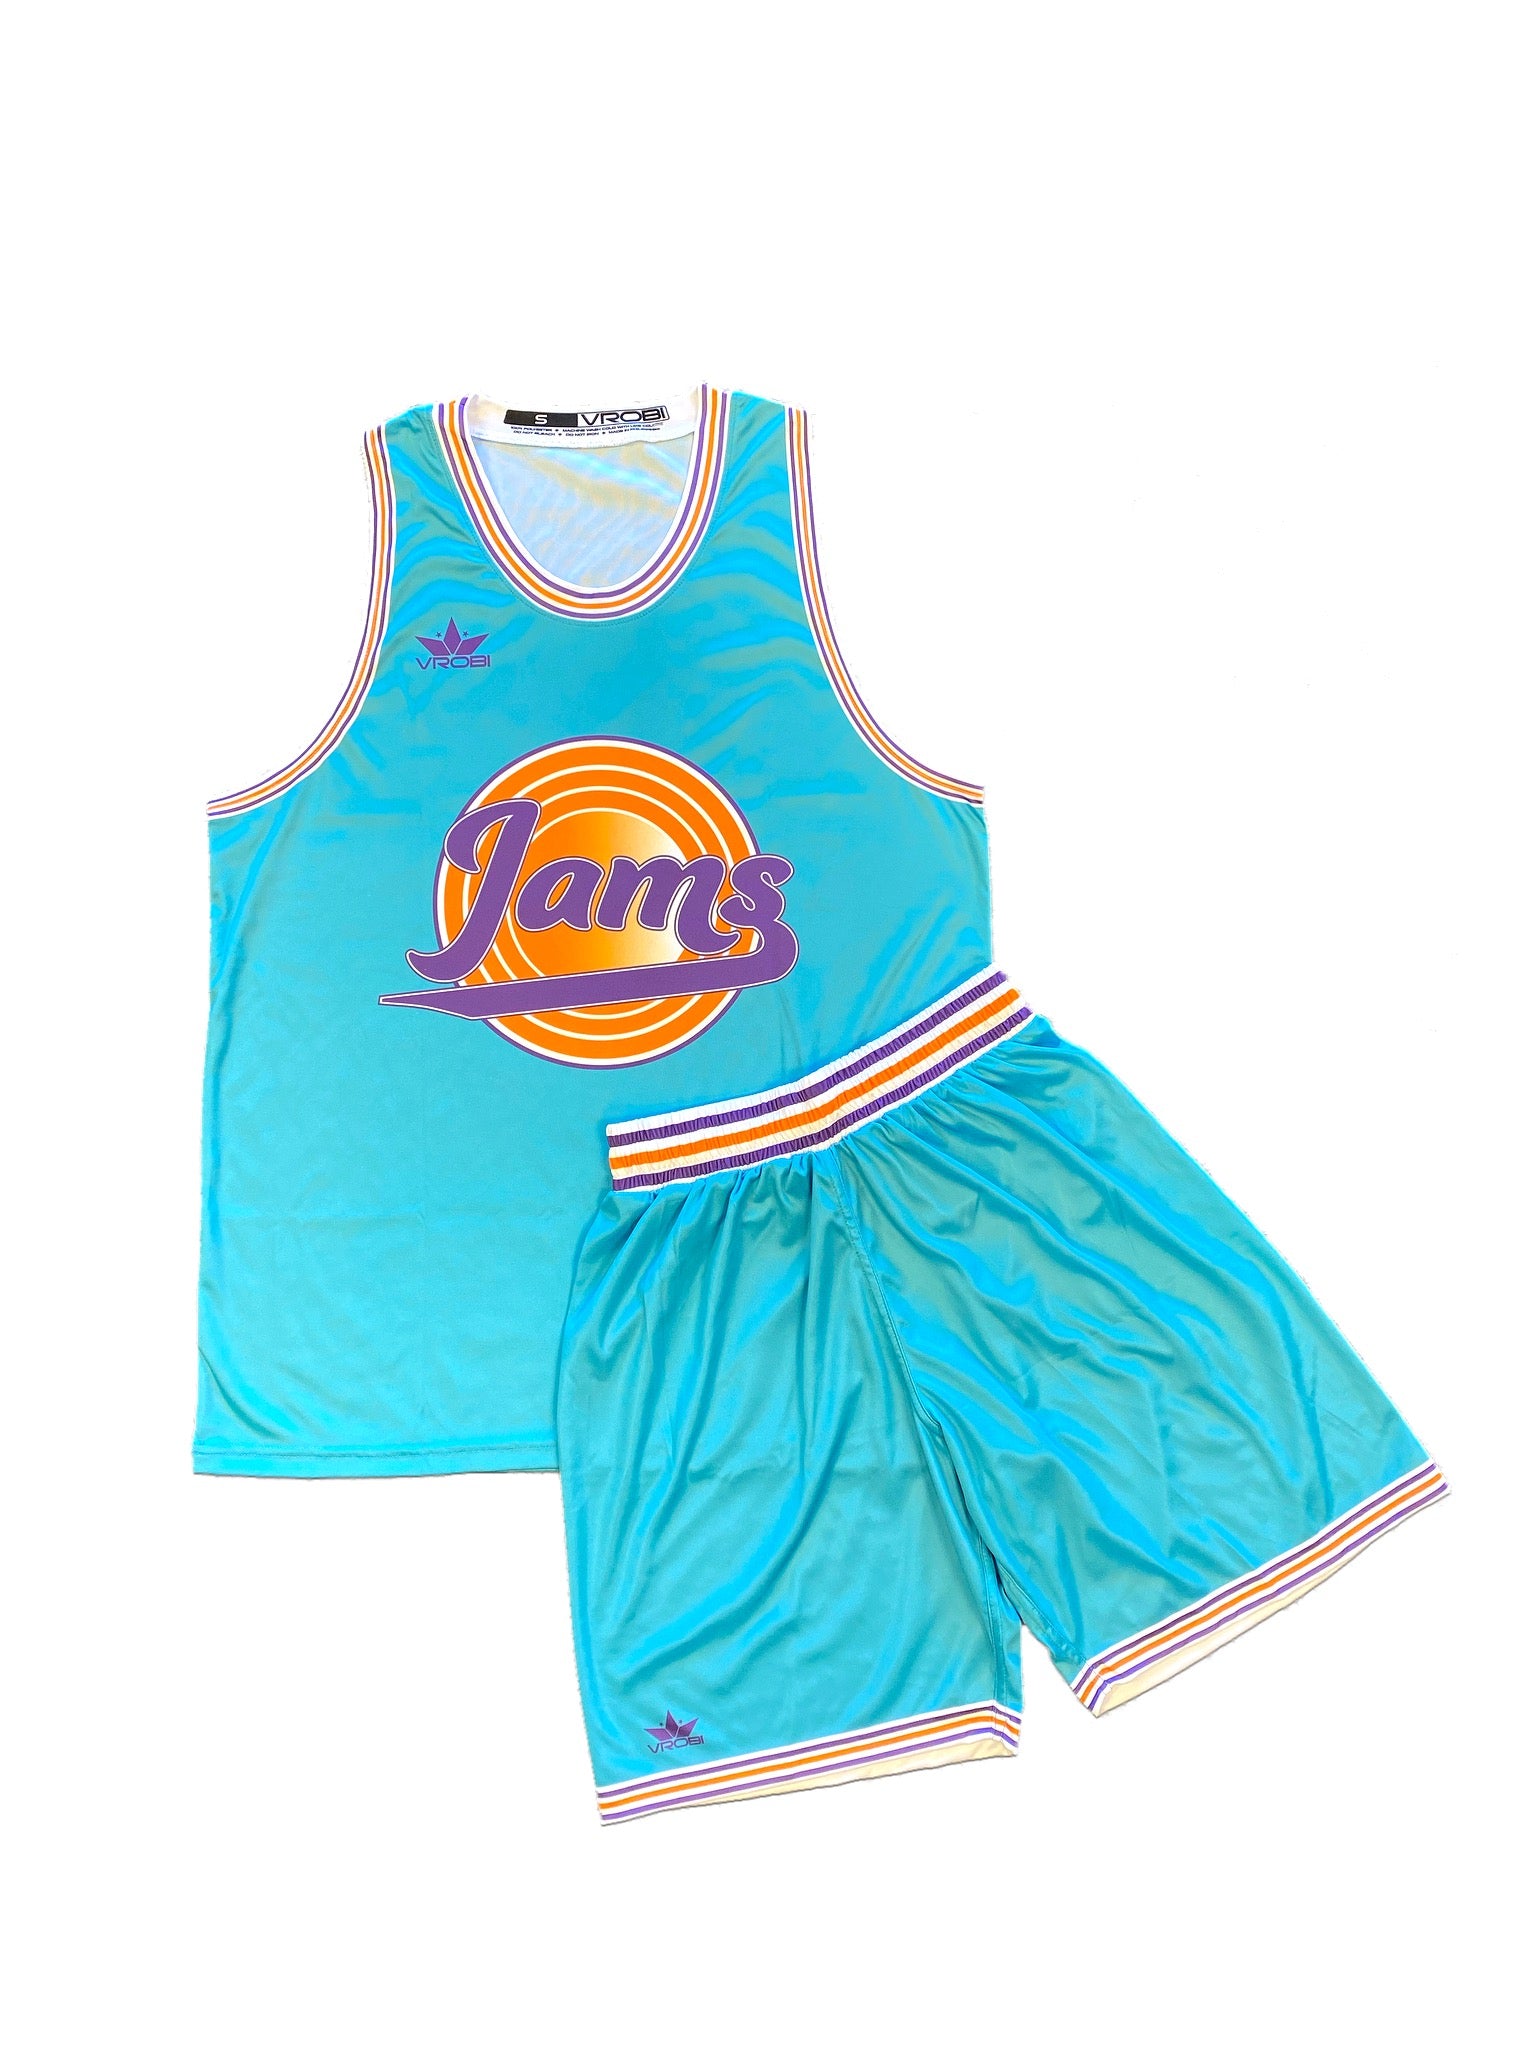 Jams Basketball Uniforms